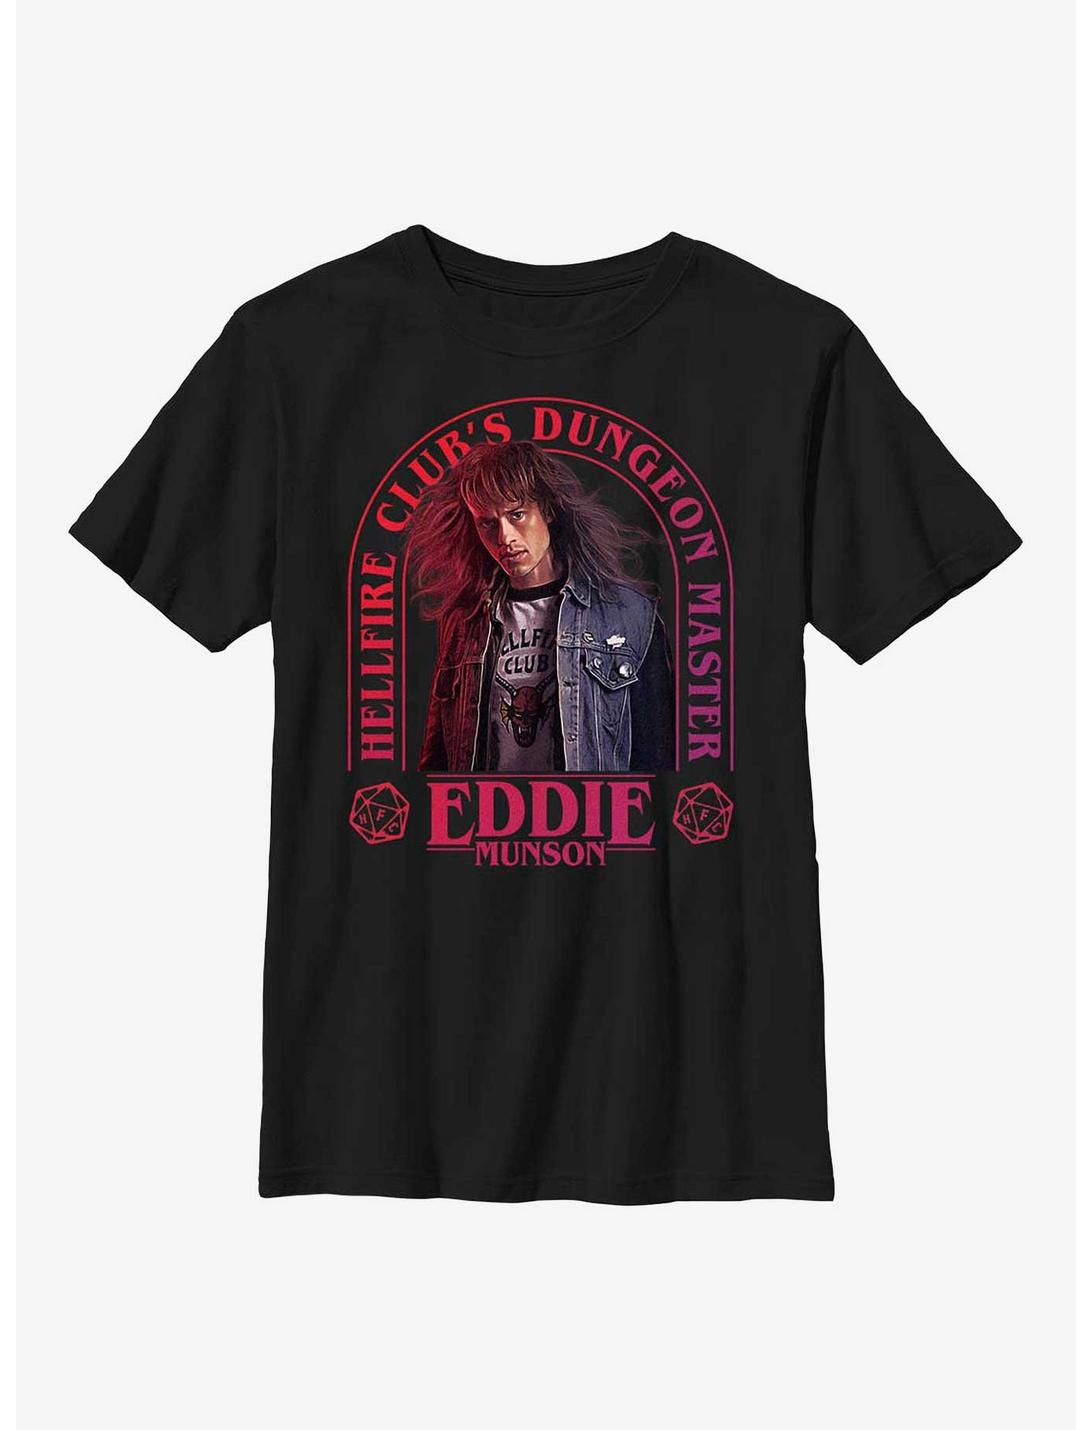 Stranger Things Dungeon Master Eddie Munson Youth T-Shirt, BLACK, hi-res